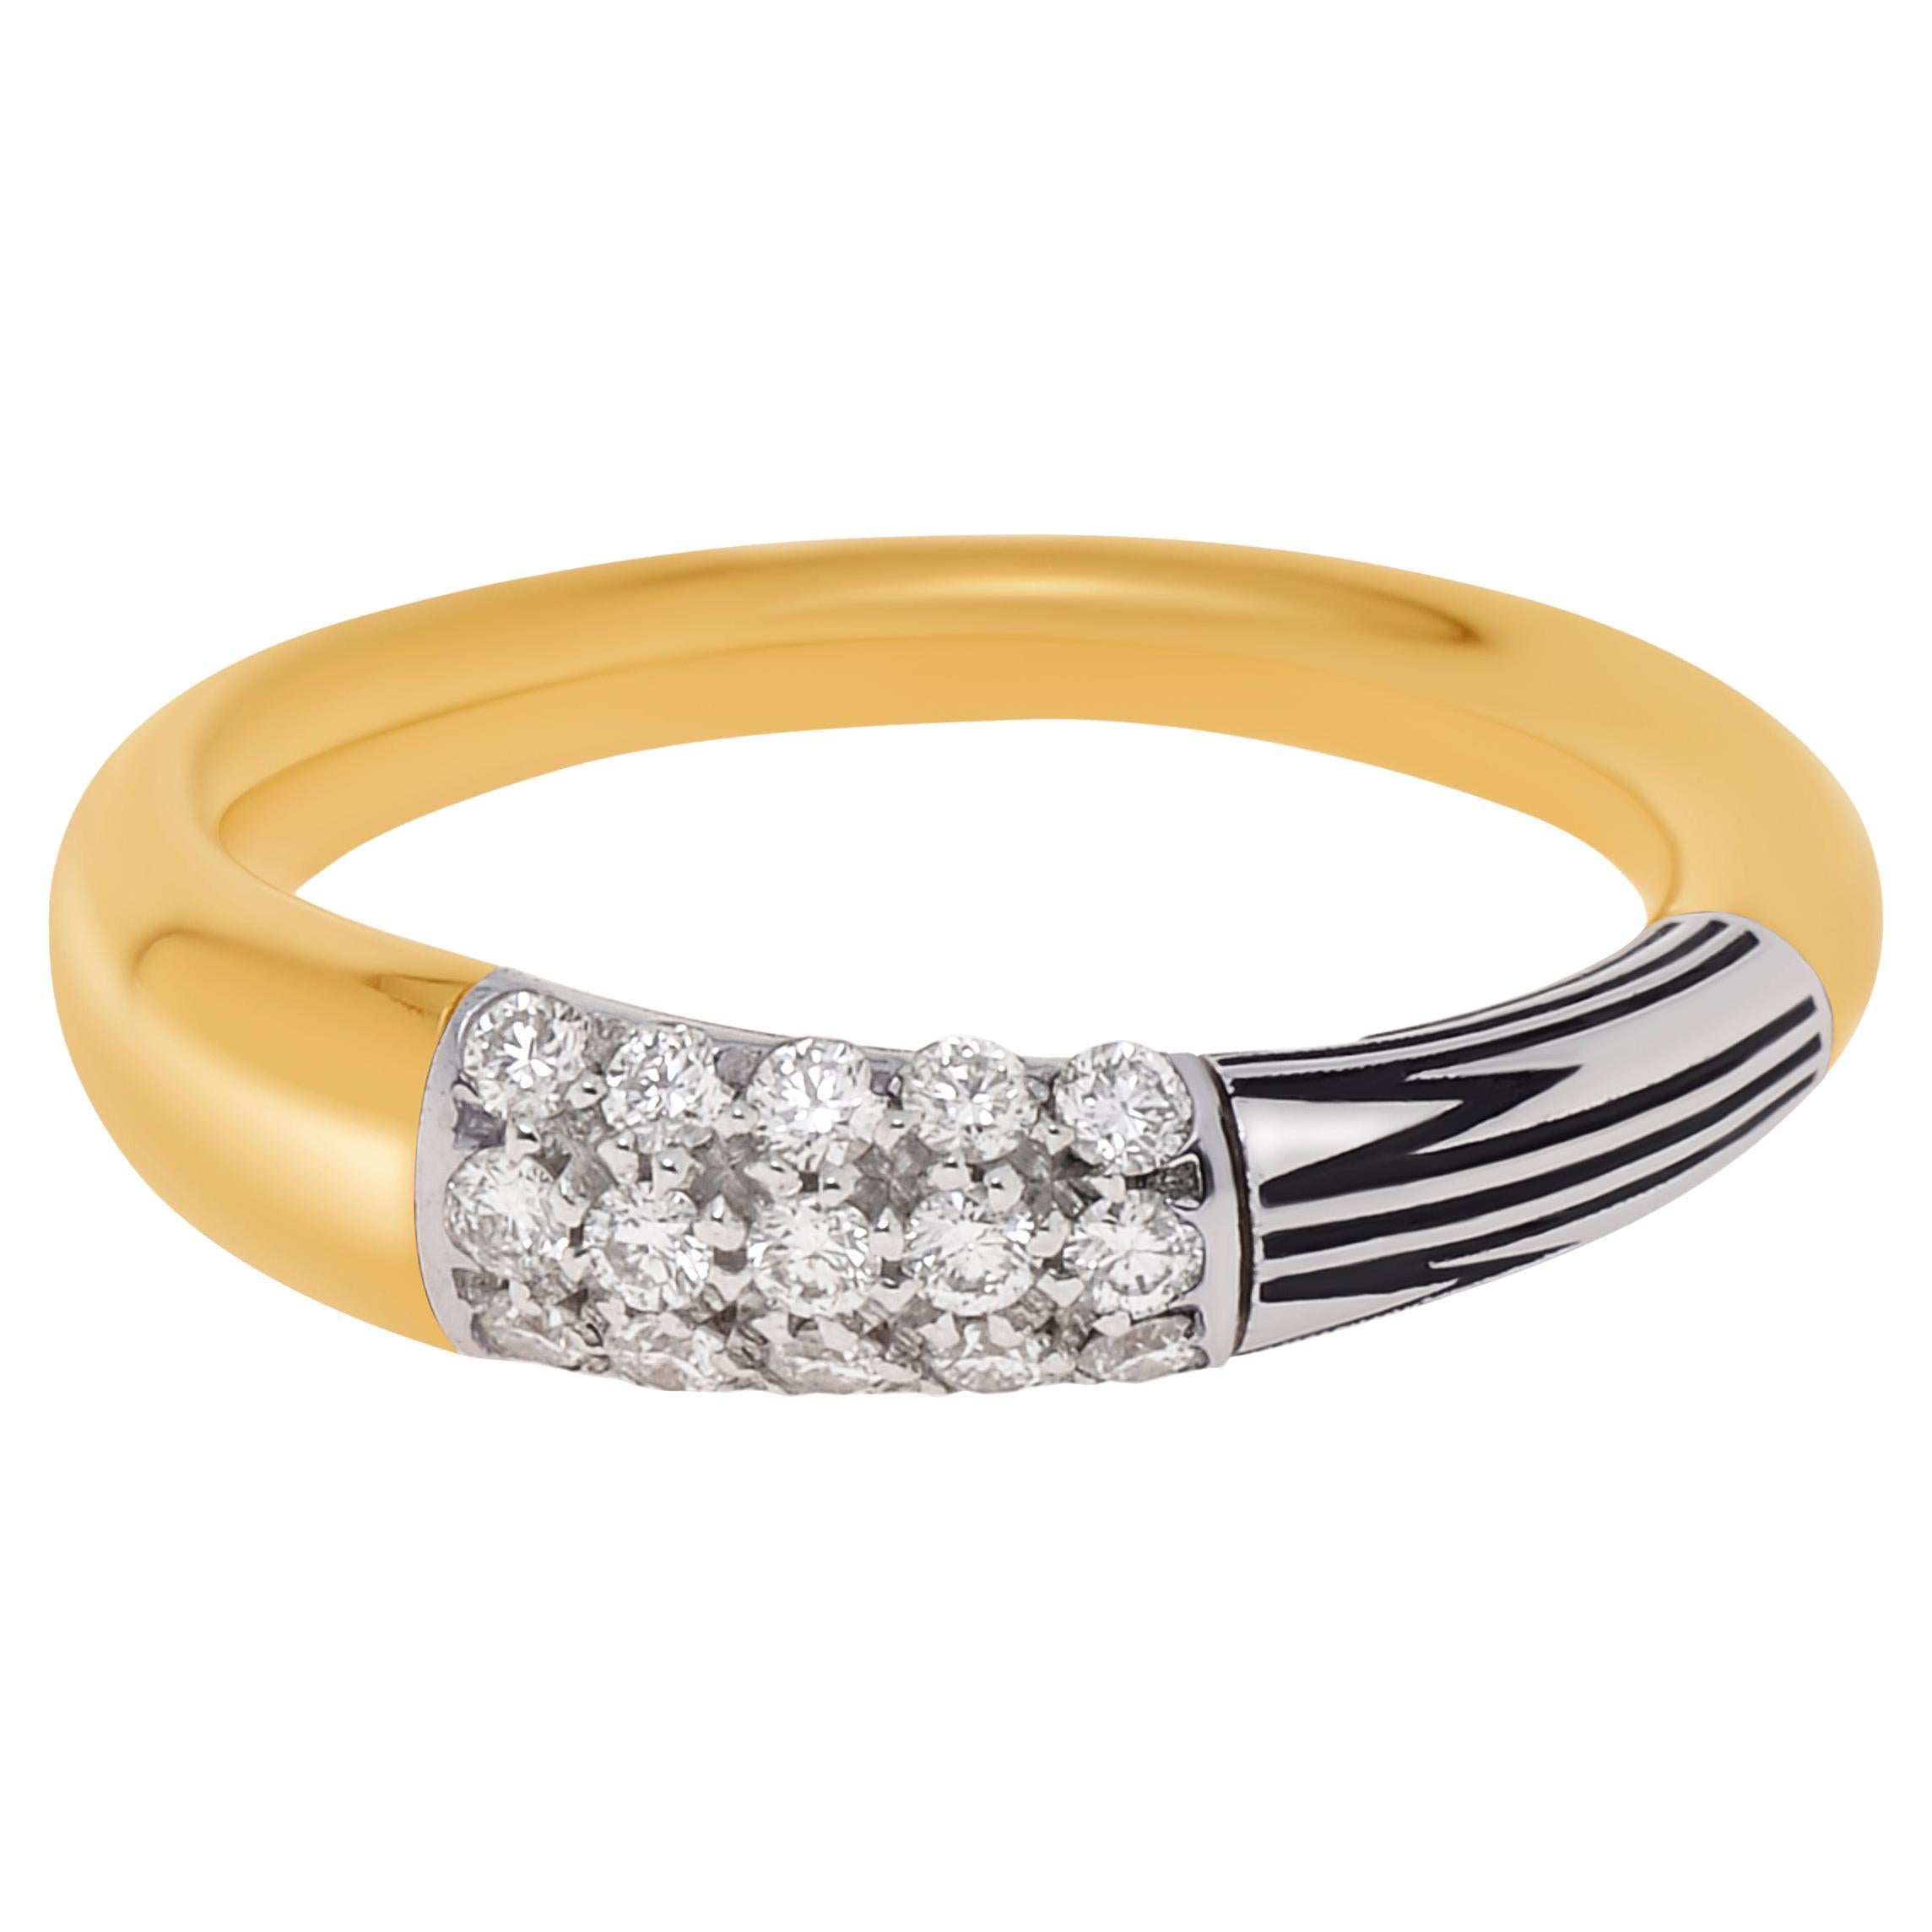 Mimi Milano Tam Tam 18K Yellow & White Gold, Diamond Ring sz 6.75